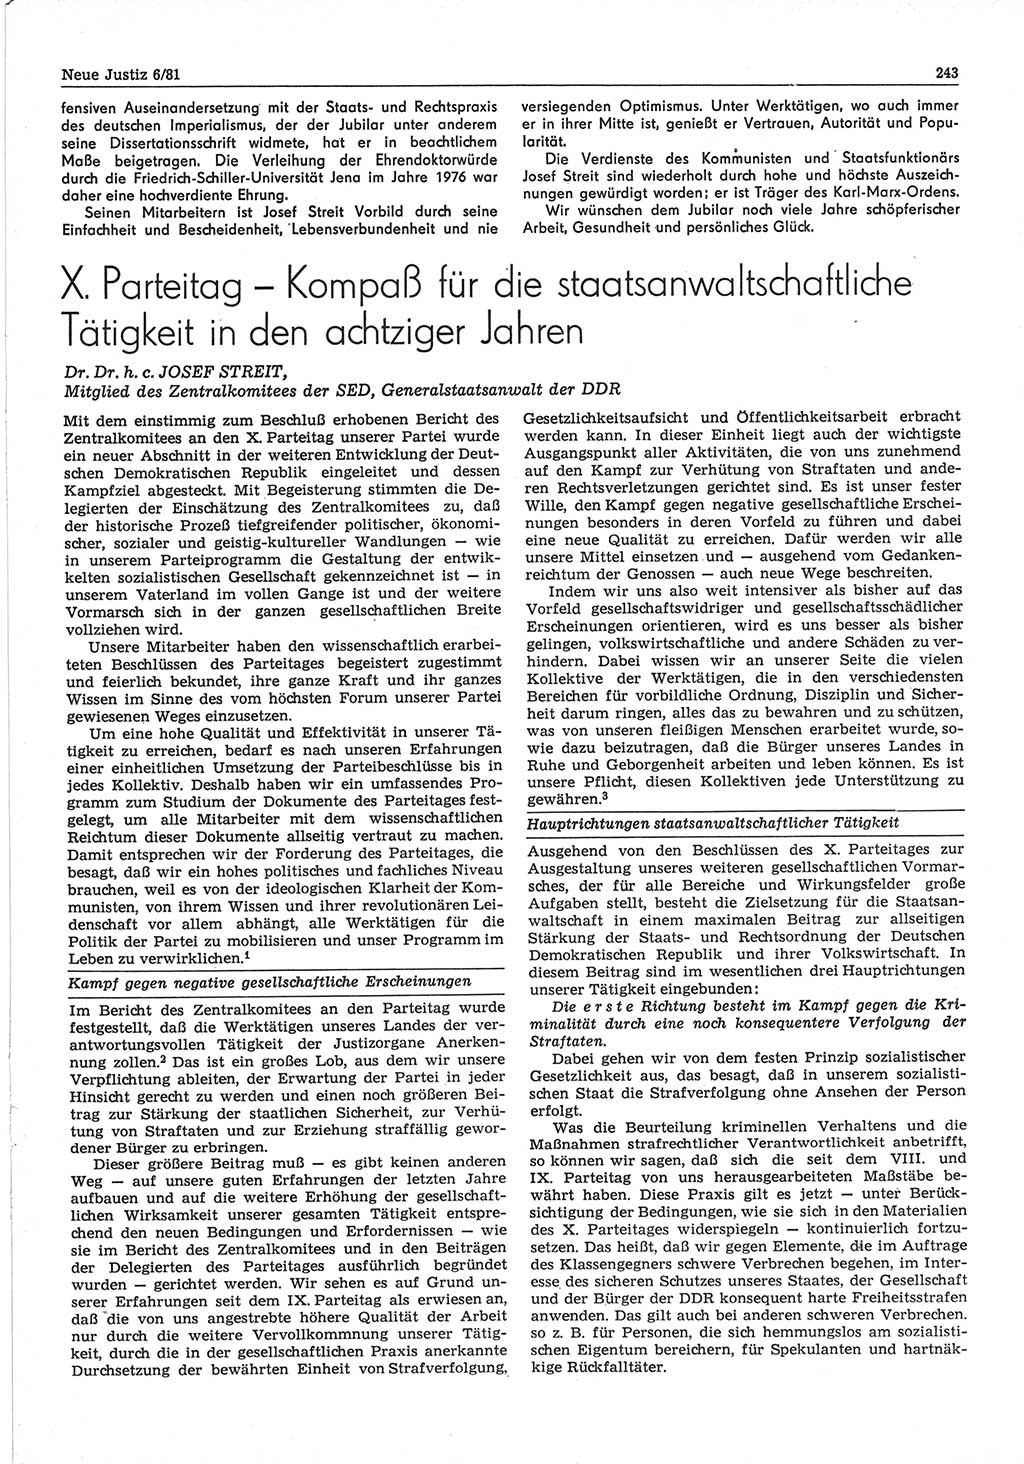 Neue Justiz (NJ), Zeitschrift für sozialistisches Recht und Gesetzlichkeit [Deutsche Demokratische Republik (DDR)], 35. Jahrgang 1981, Seite 243 (NJ DDR 1981, S. 243)